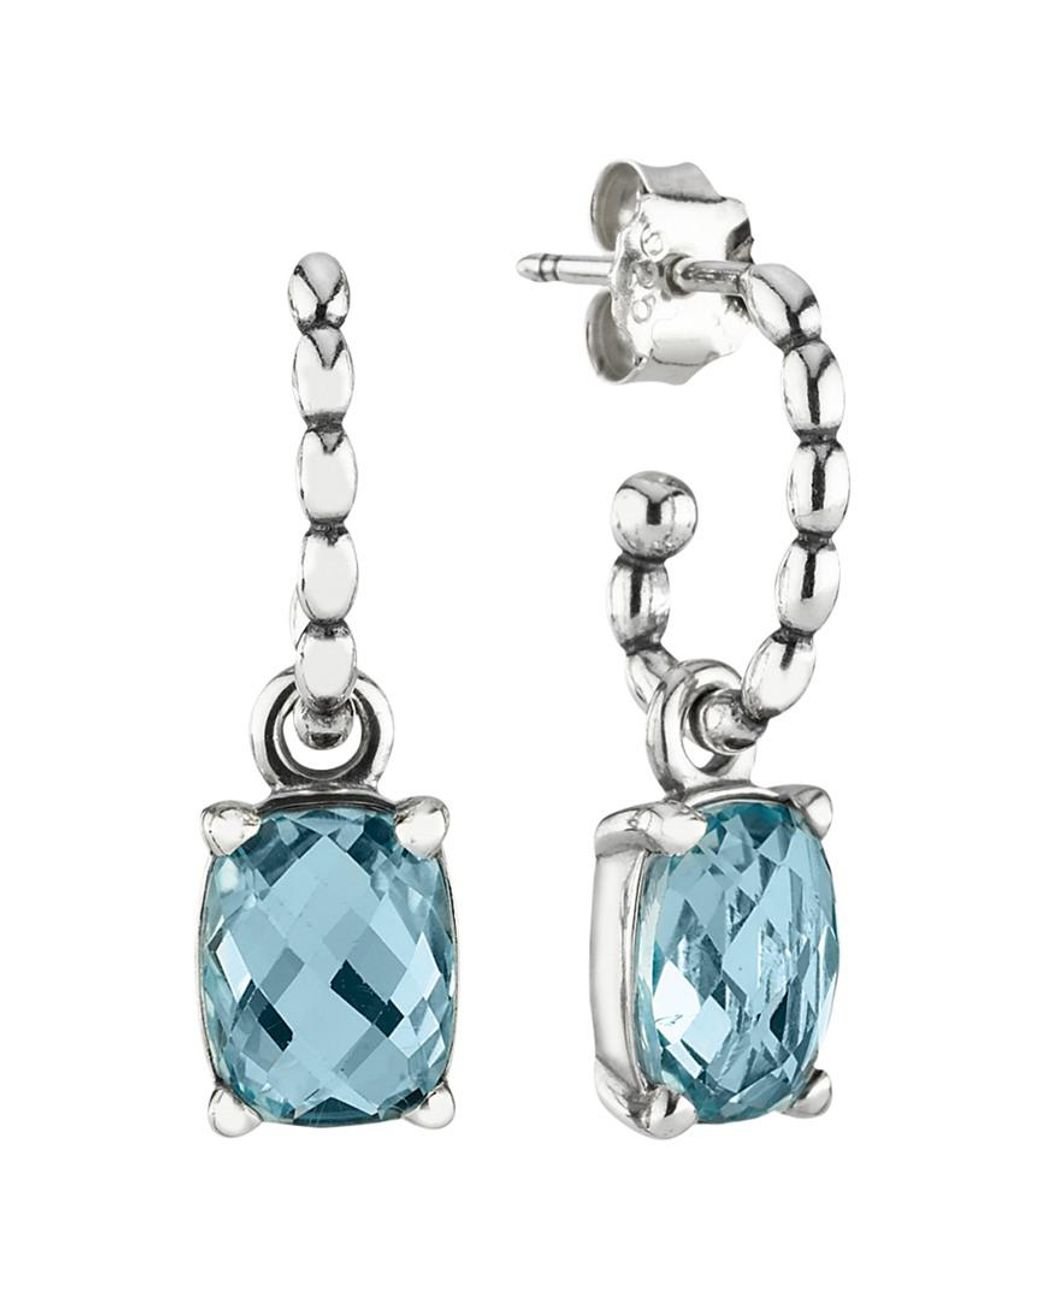 Flat Helix Jewellery  Earrings for Flat Helix Piercings  Laura Bond